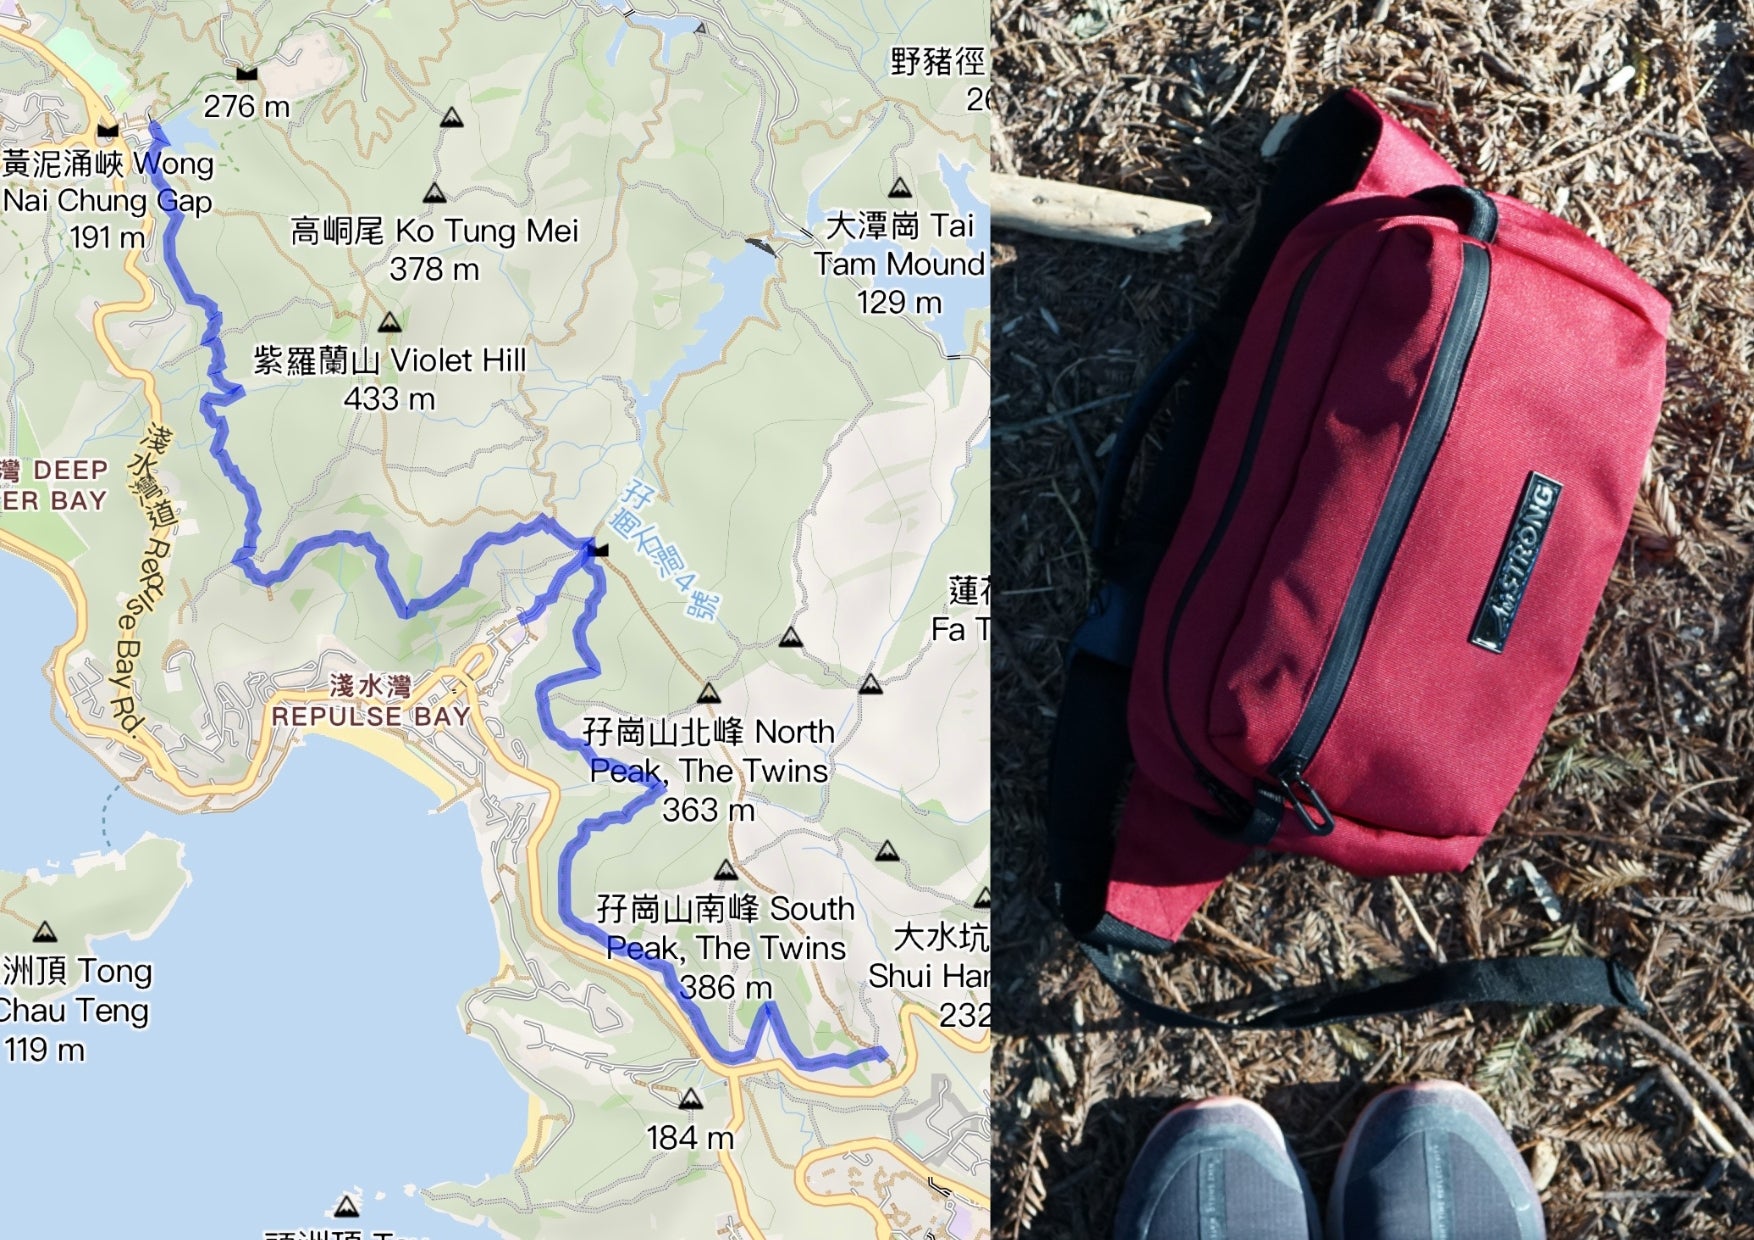 AmSTRONG Blog| 4 Rewarding Running Routes on Hong Kong Island